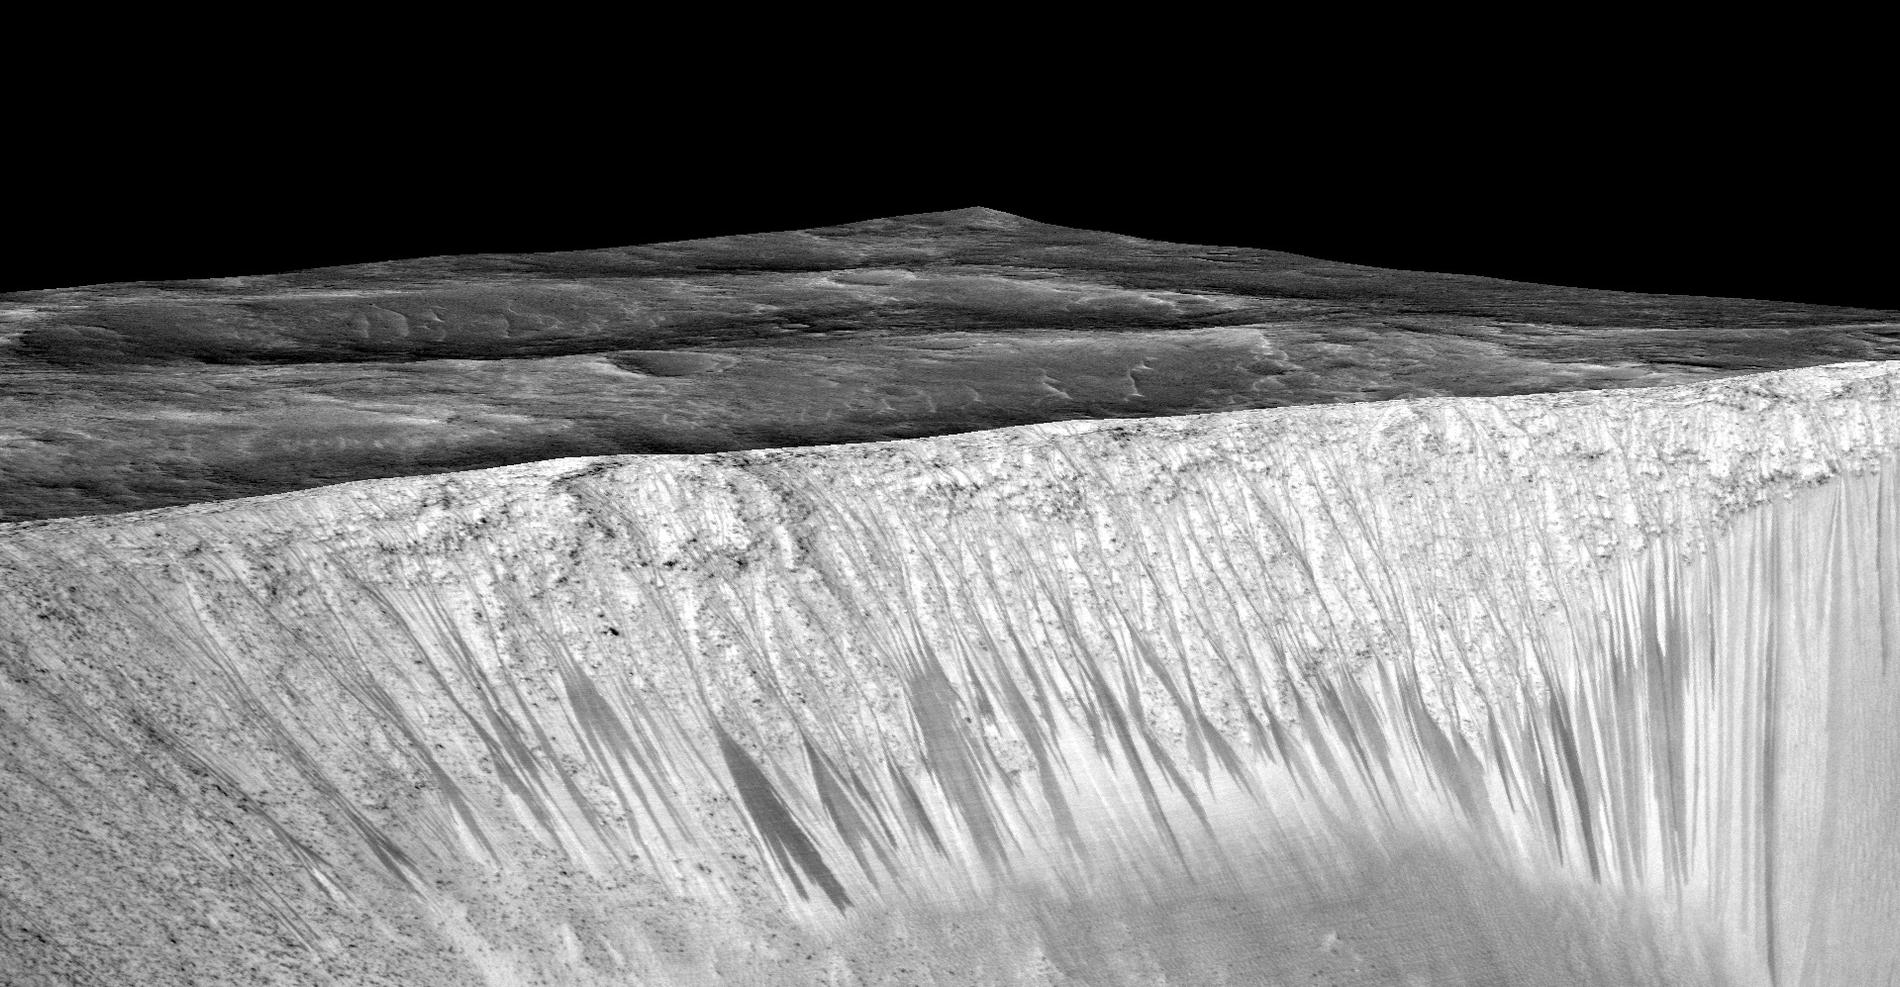 De mörka stråken syns även längs sluttningen till kratern Garni på Mars, ett tecken på att vatten runnit där.